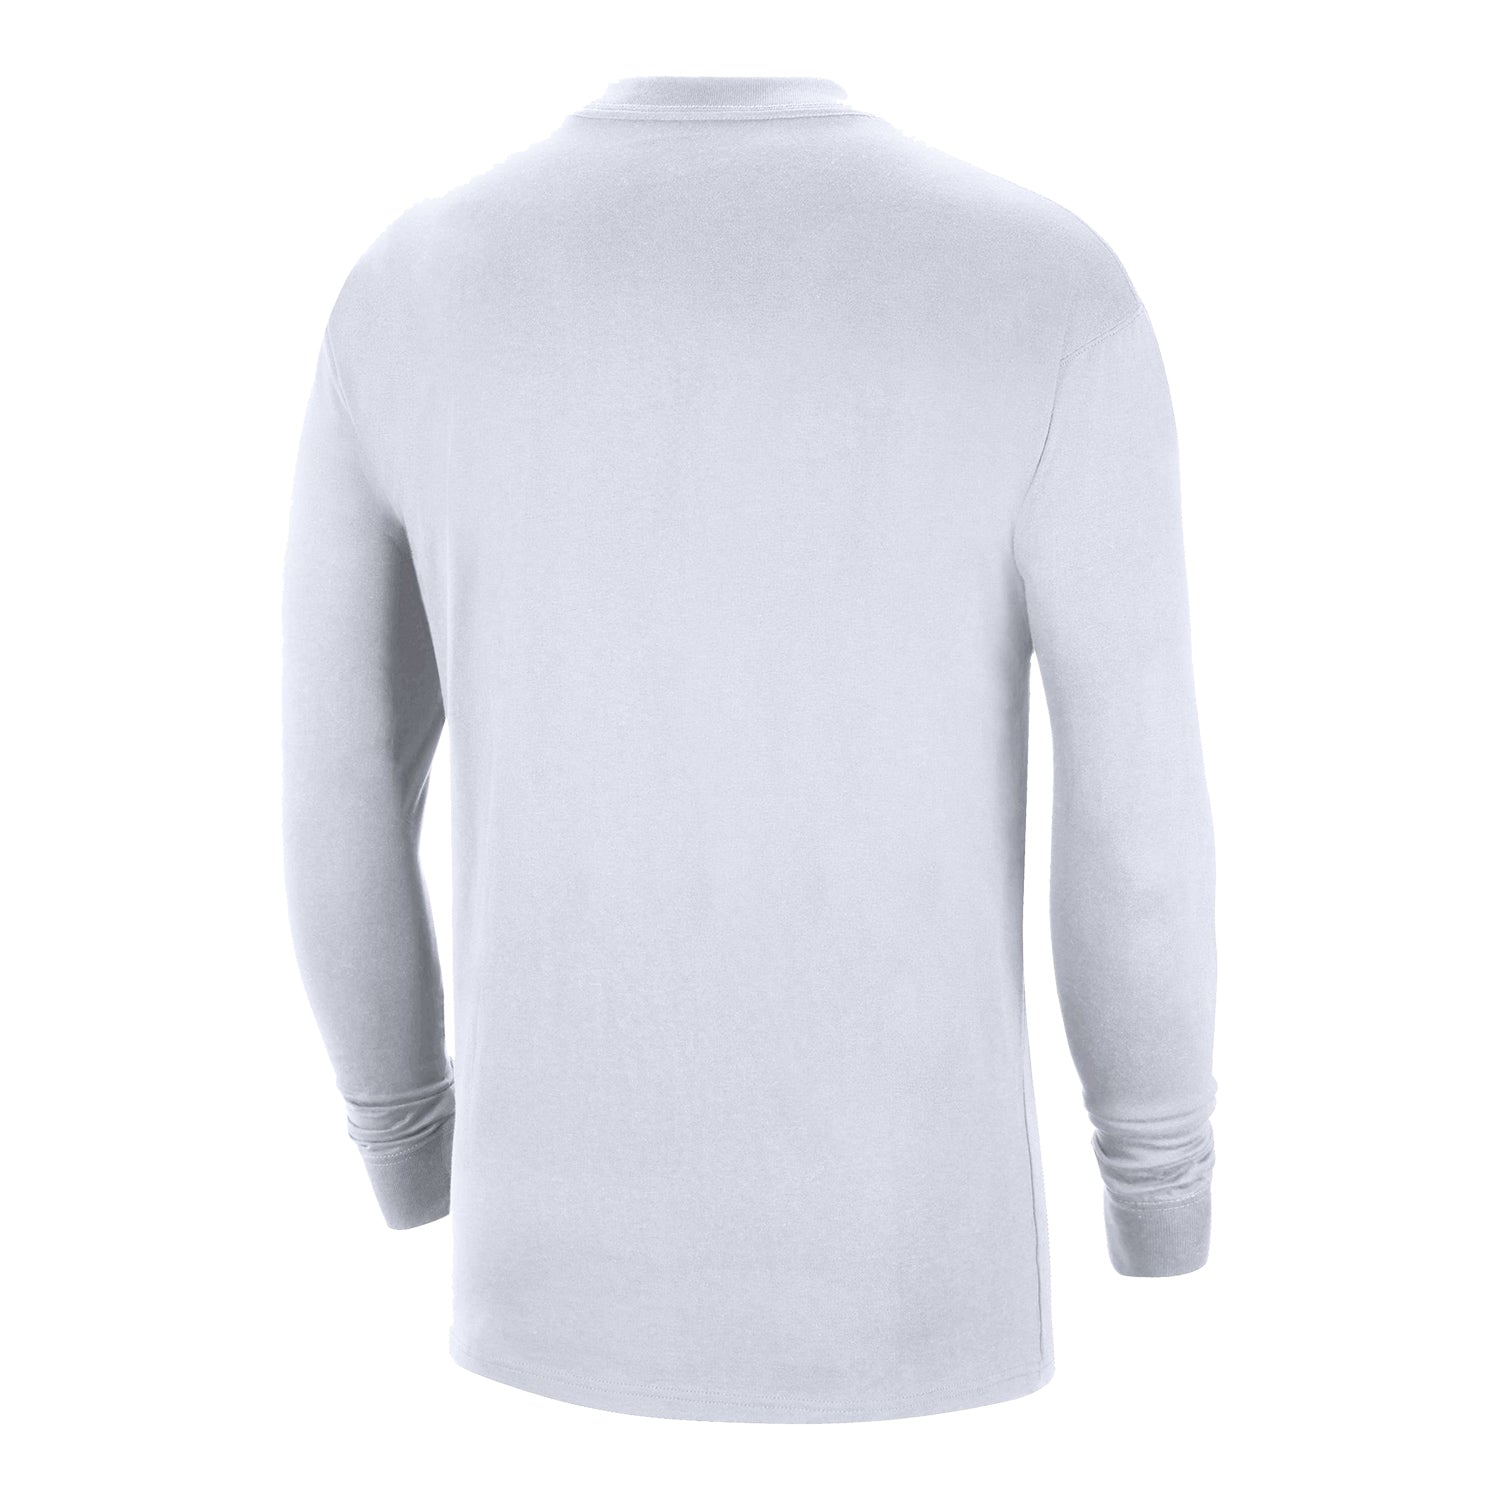 Chicago Bulls Nike Jordan White Long Sleeve T-Shirt - back view